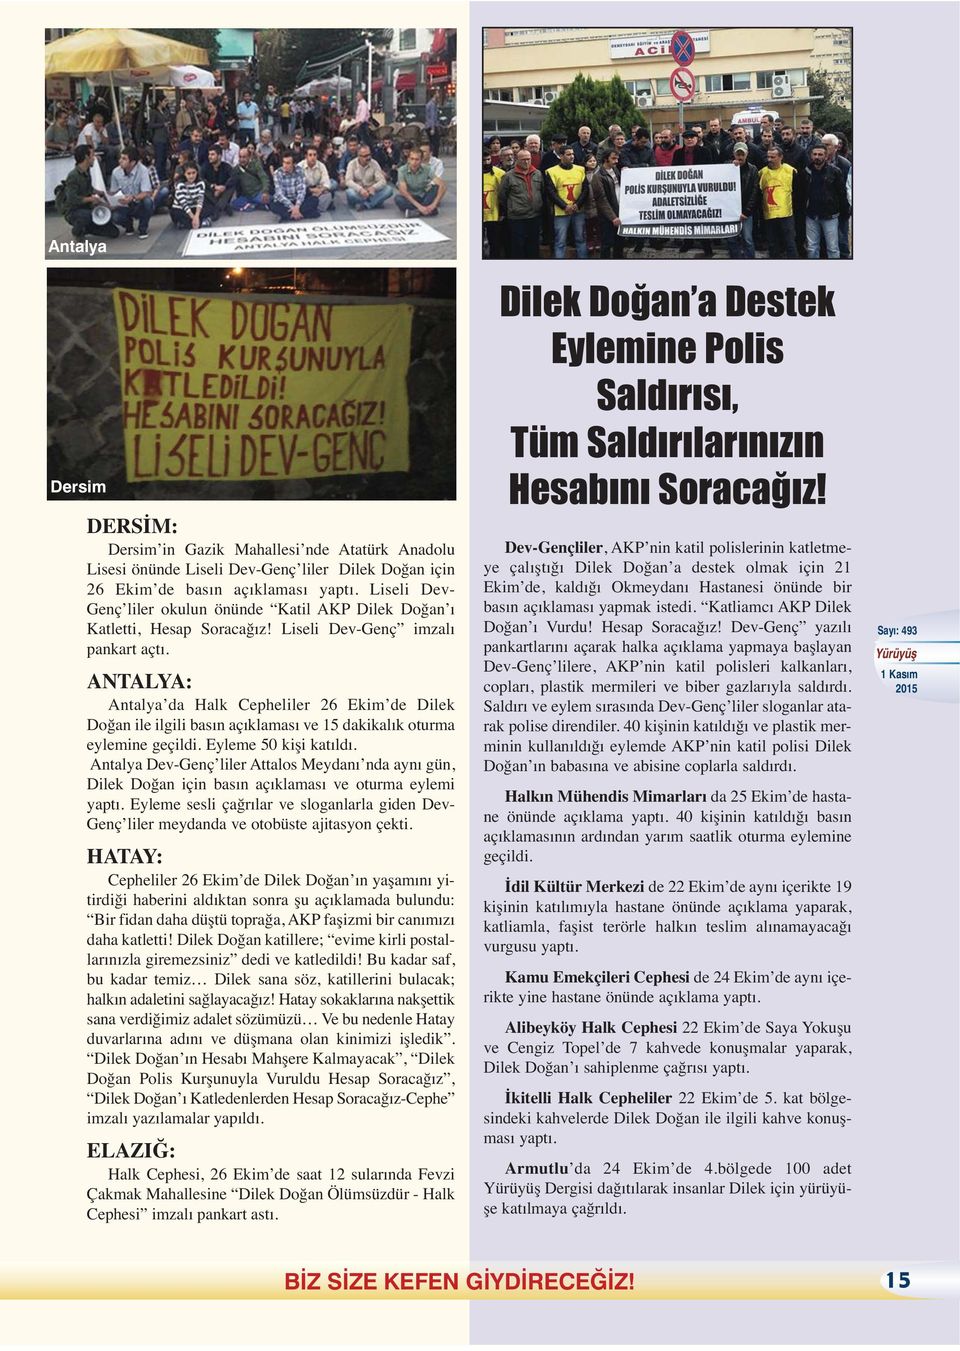 ANTALYA: Antalya da Halk Cepheliler 26 Ekim de Dilek Doğan ile ilgili basın açıklaması ve 15 dakikalık oturma eylemine geçildi. Eyleme 50 kişi katıldı.